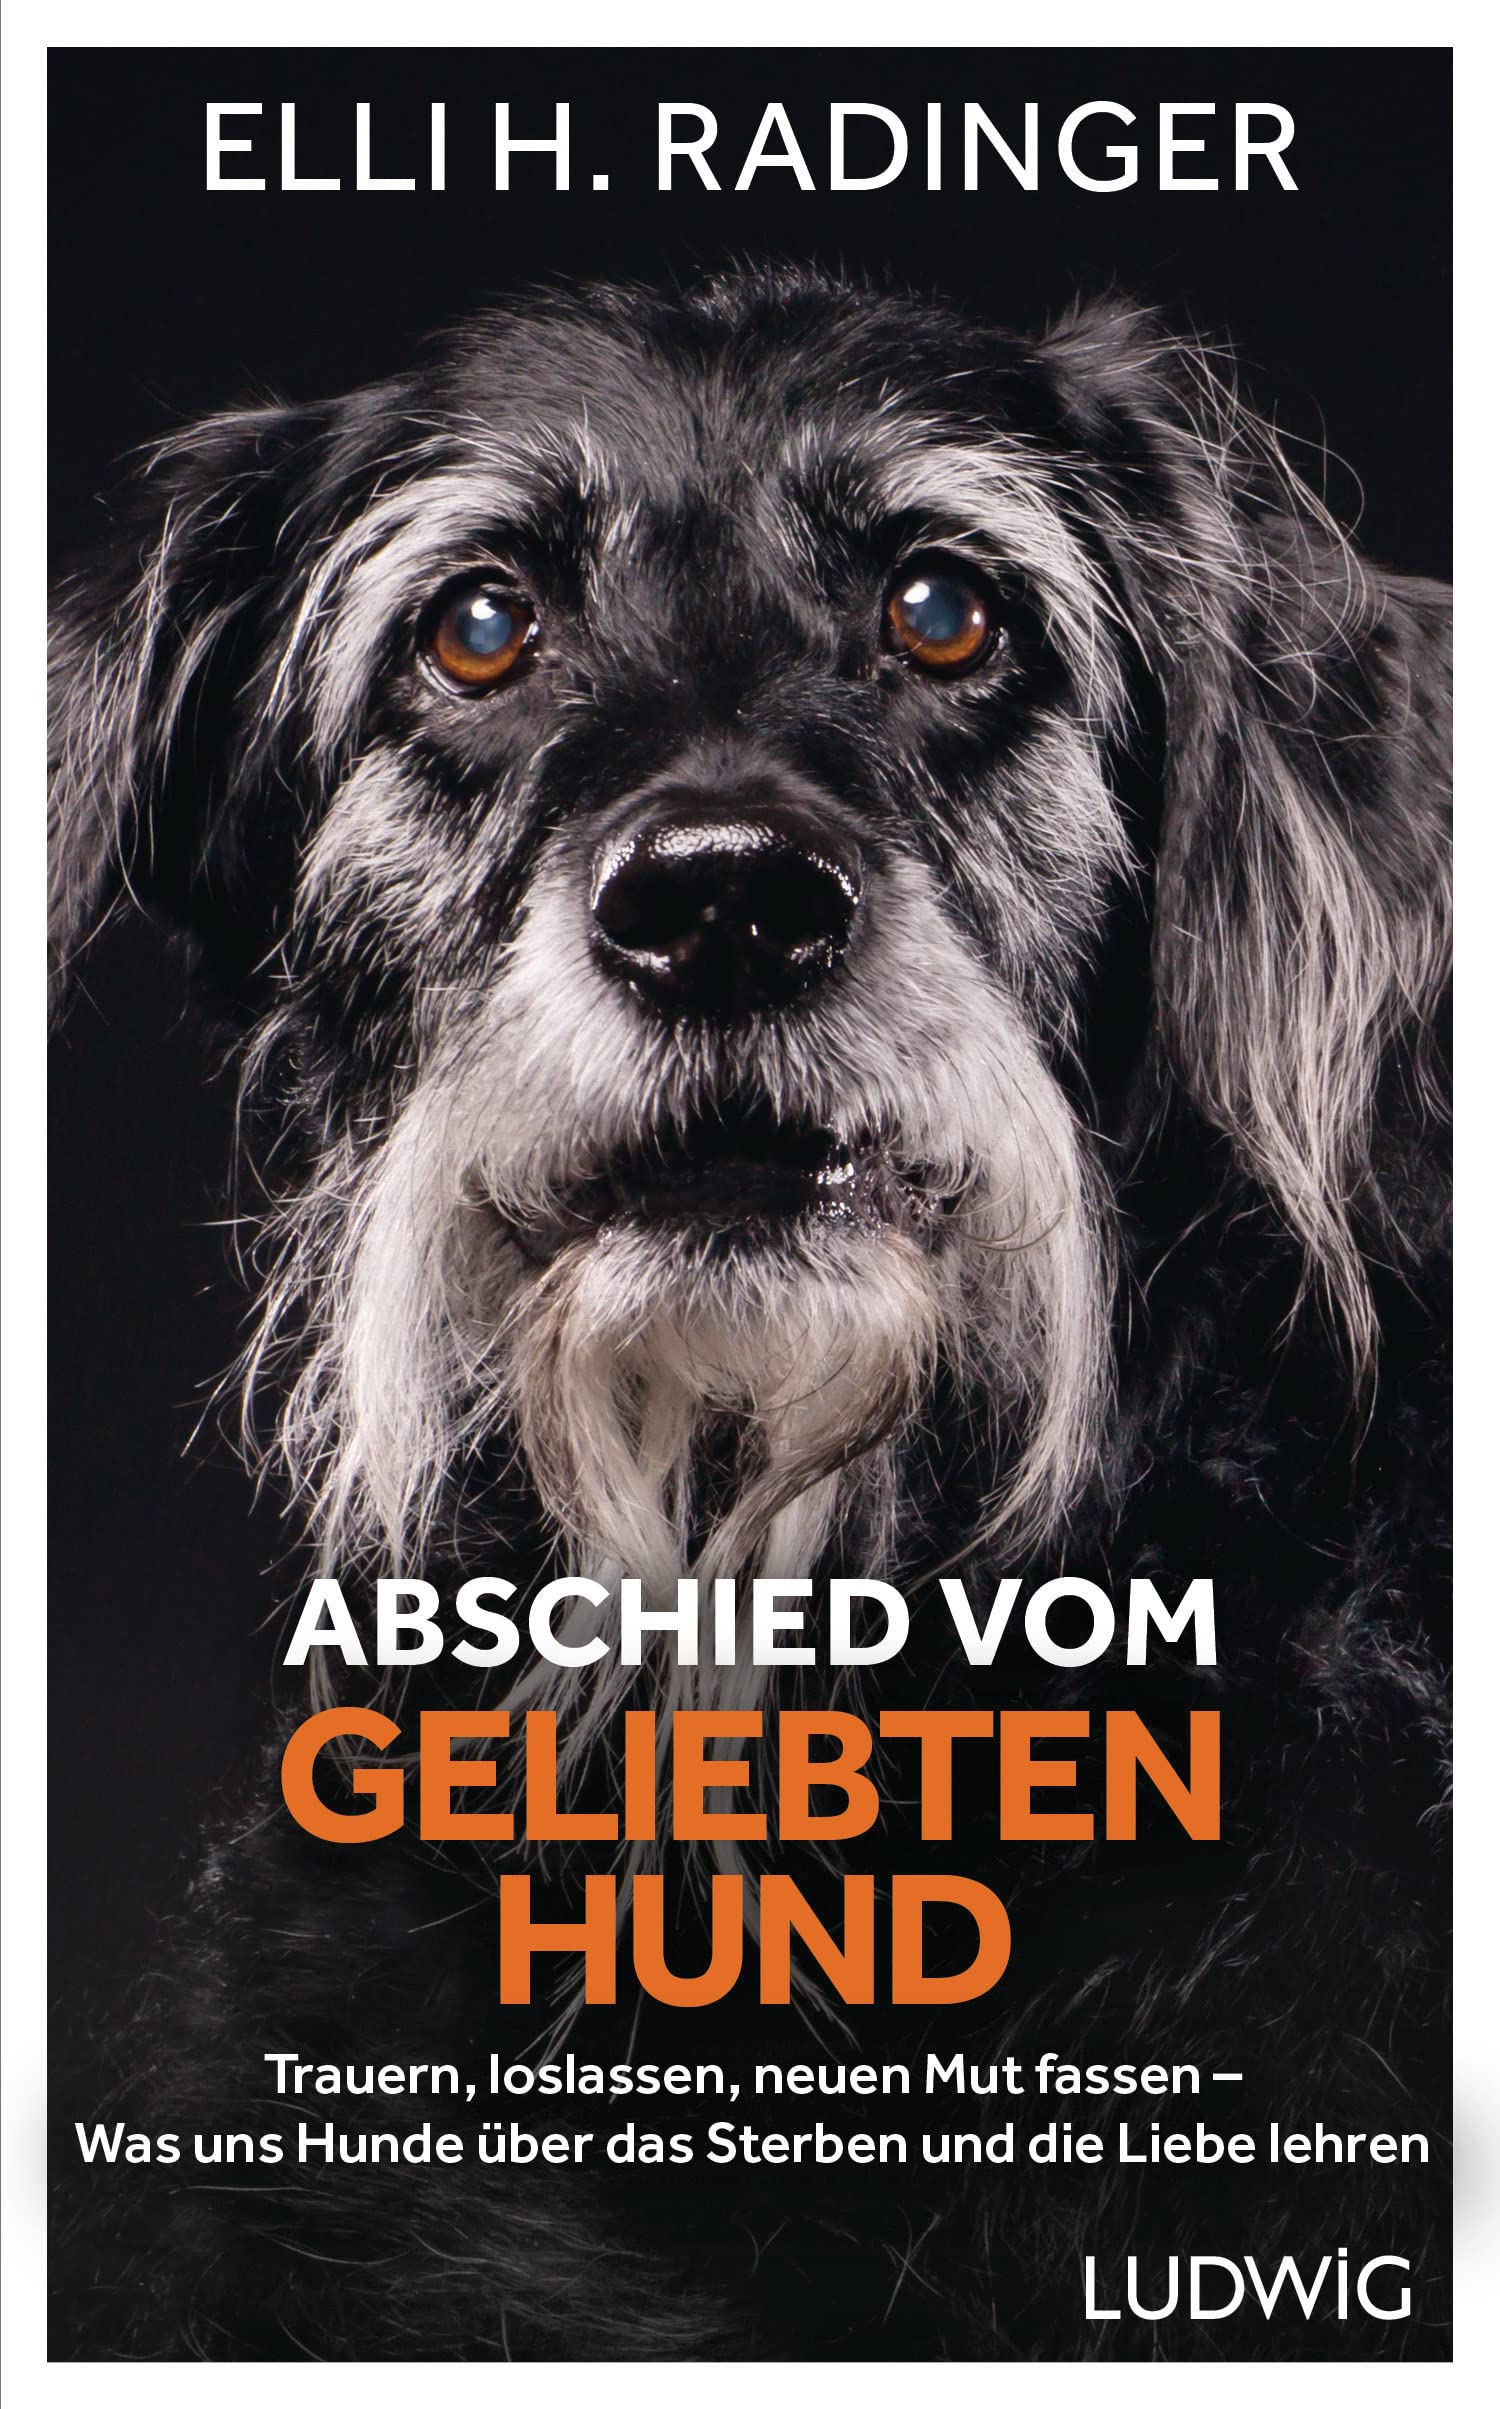 Ludwig Verlag - Abschied vom geliebten Hund: Trauern, loslassen, neuen Mut fassen [Elli H. Radinger]